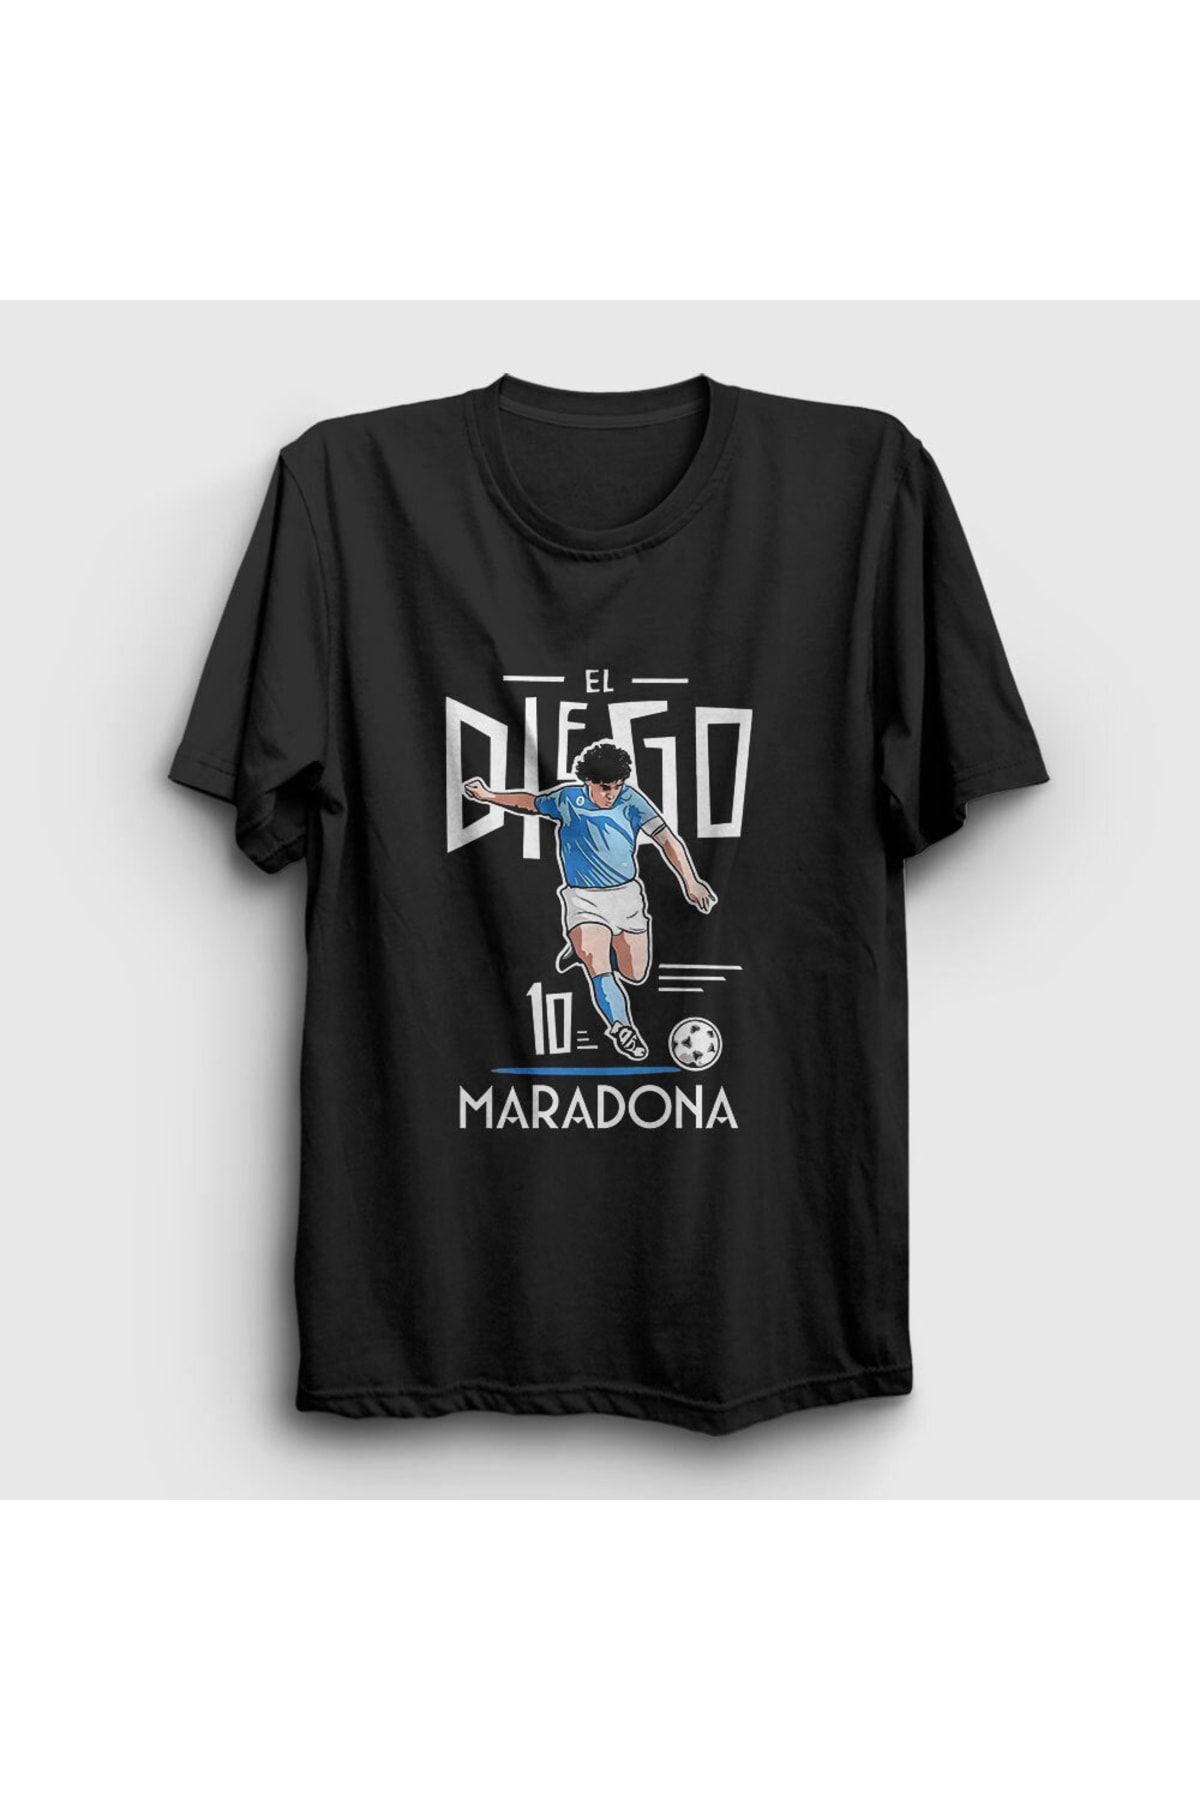 Presmono Unisex Siyah Futbol Sut Maradona T-shirt 51410tt